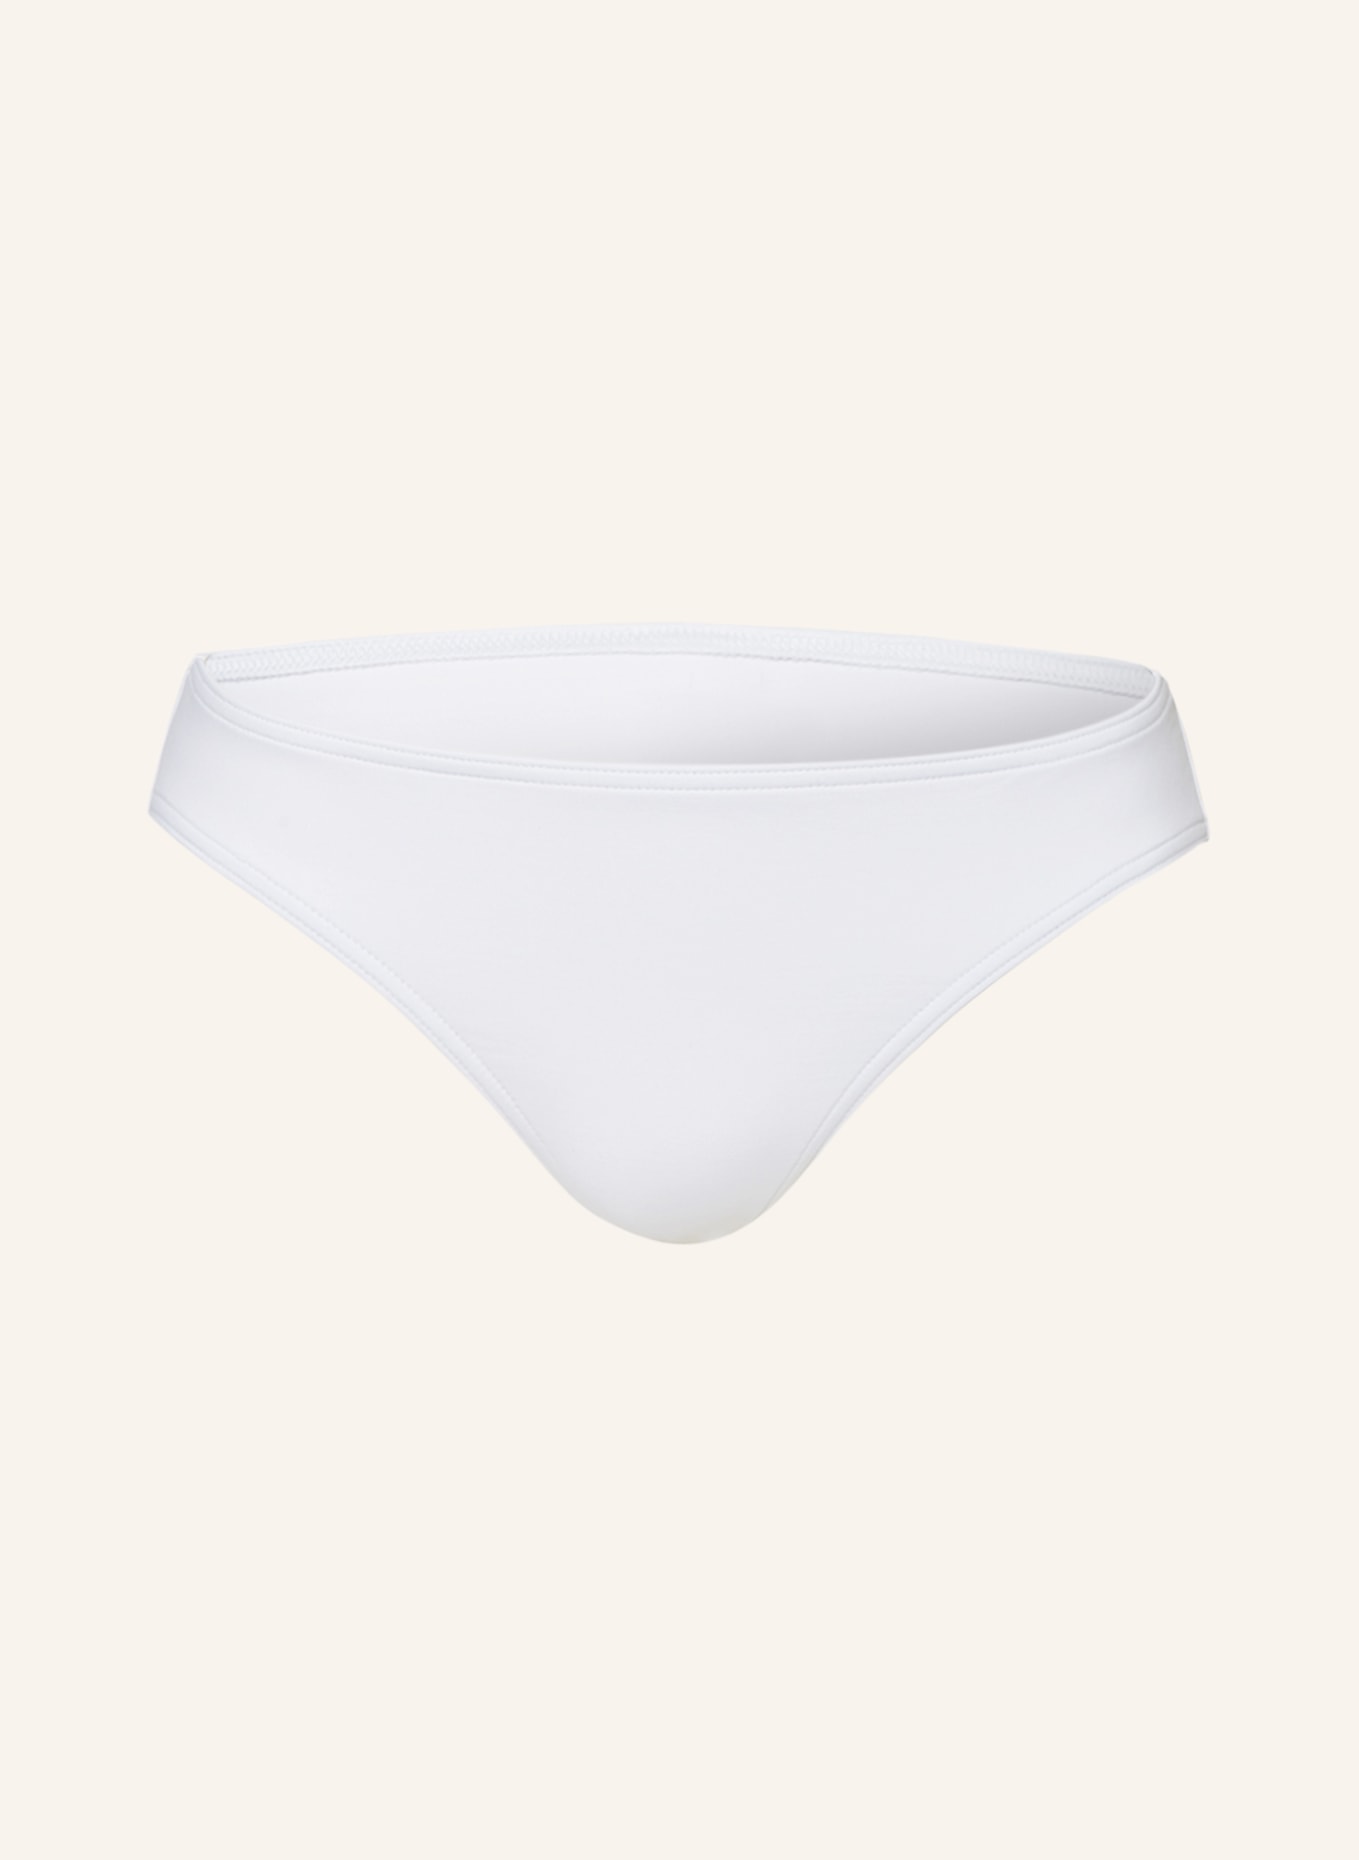 ERES Basic bikini bottoms SCARLETT, Color: WHITE (Image 1)